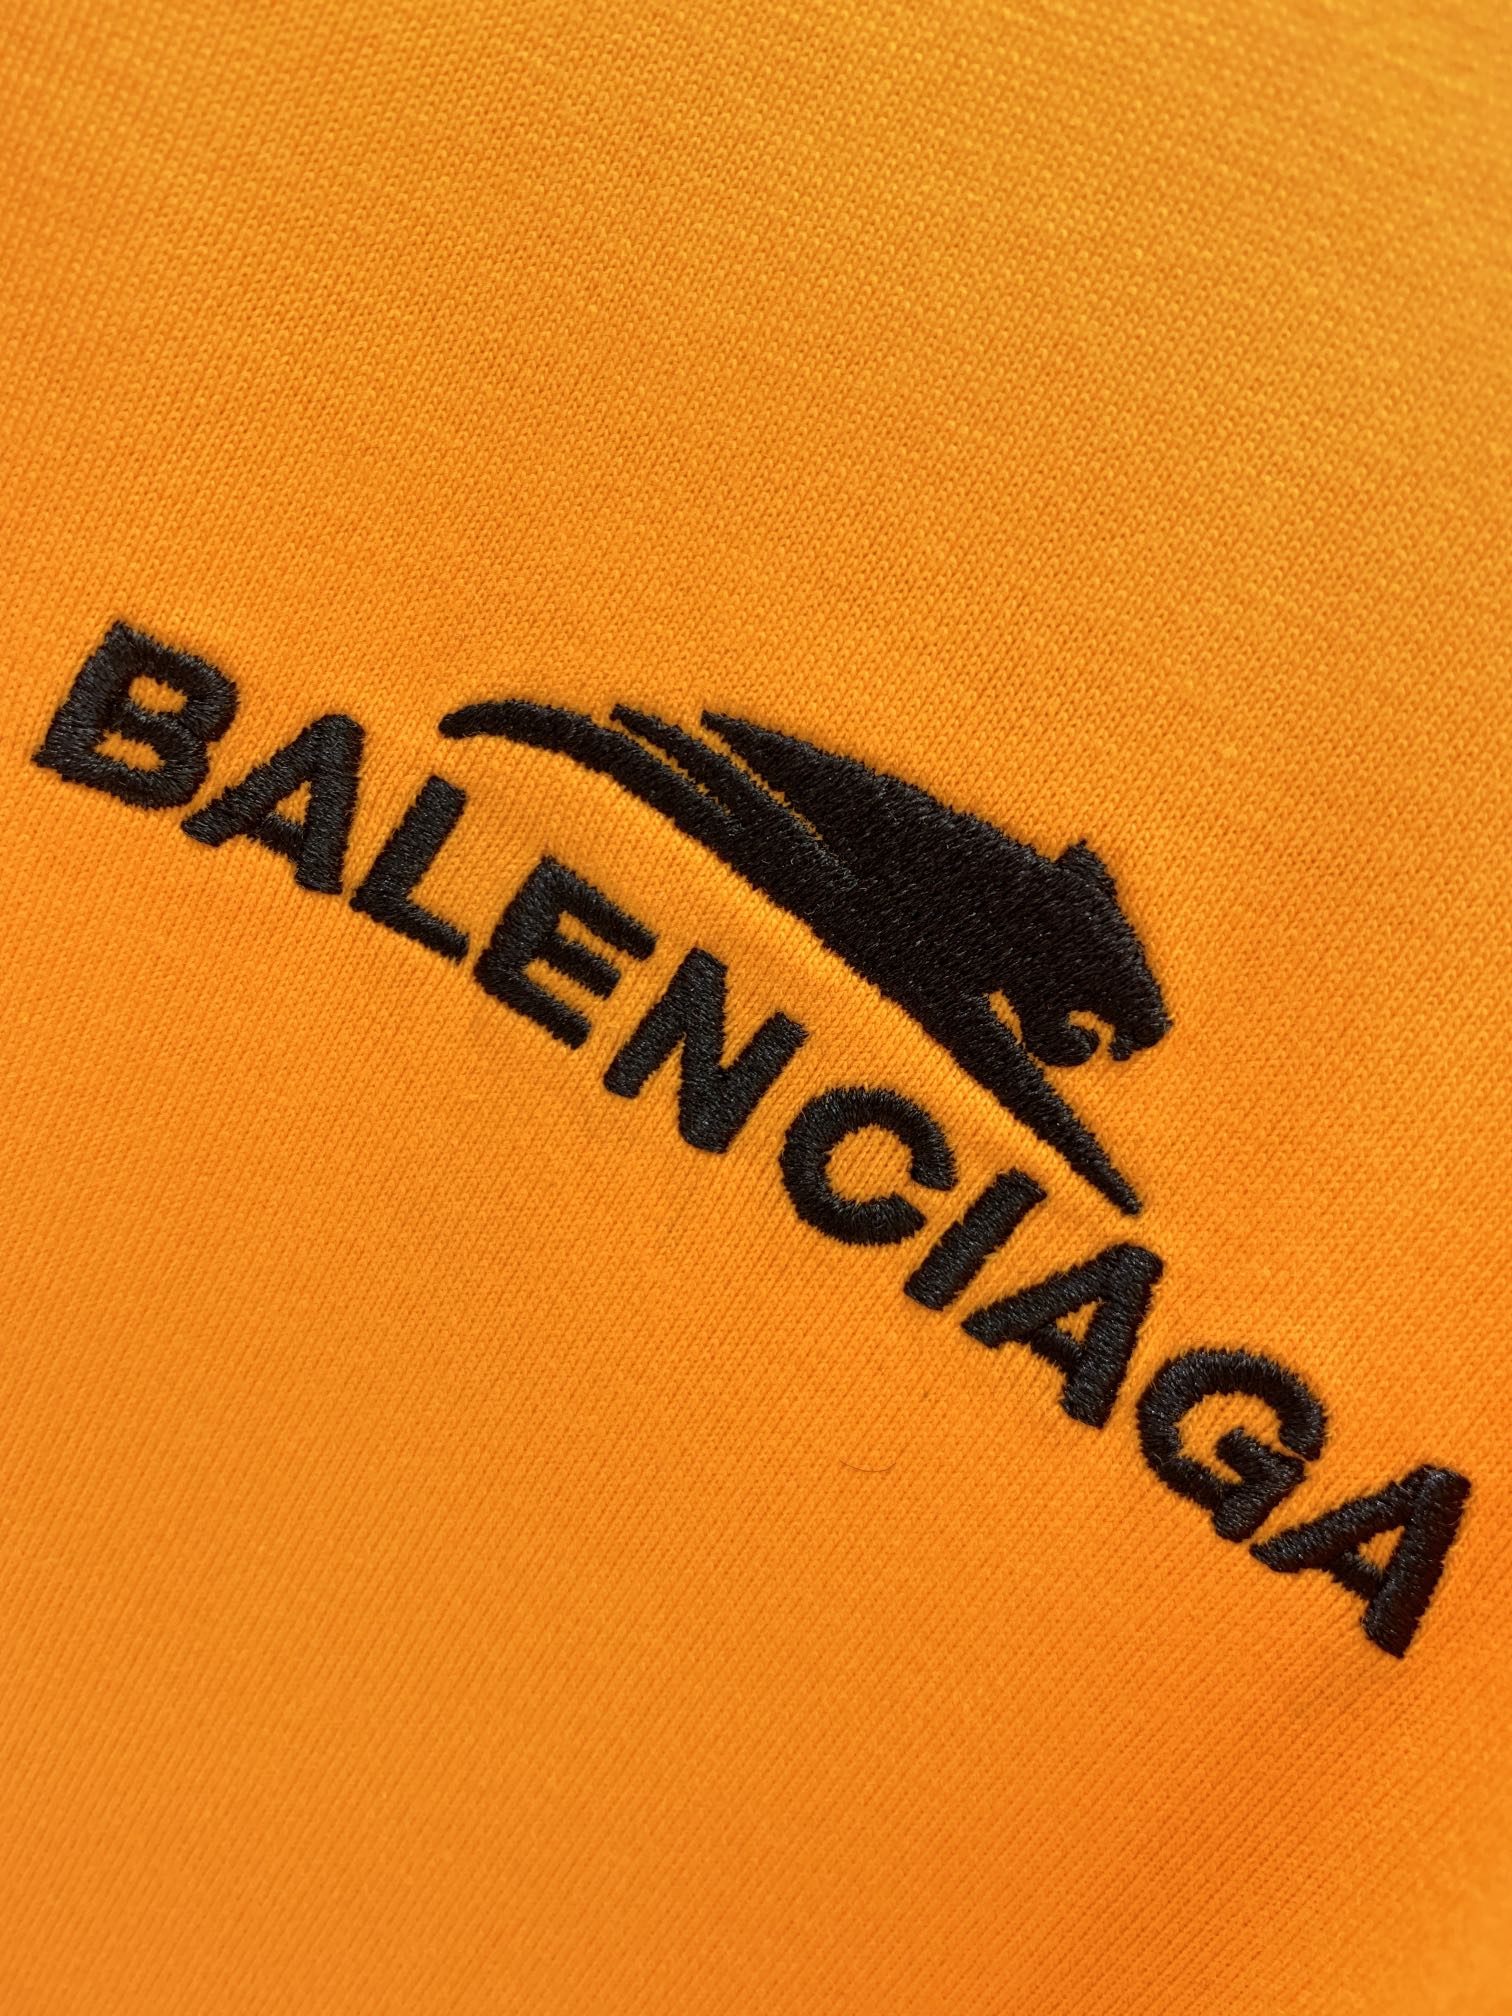 balenciaga wallpaper | Balenciaga wallpaper, Supreme iphone wallpaper,  Wallpaper iphone neon